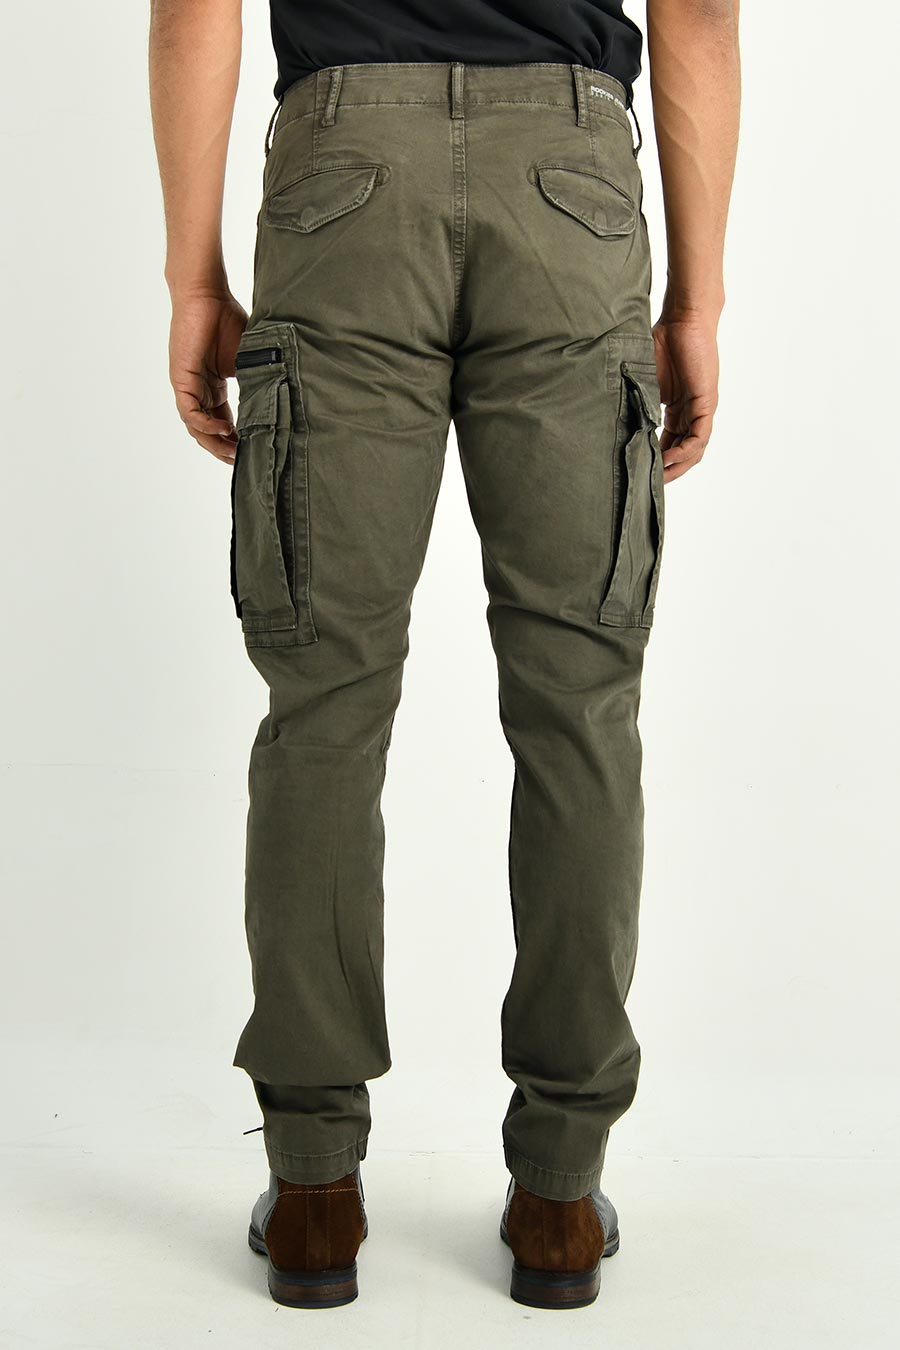 Men's Cargo Pant - Rookies Jeans Co.